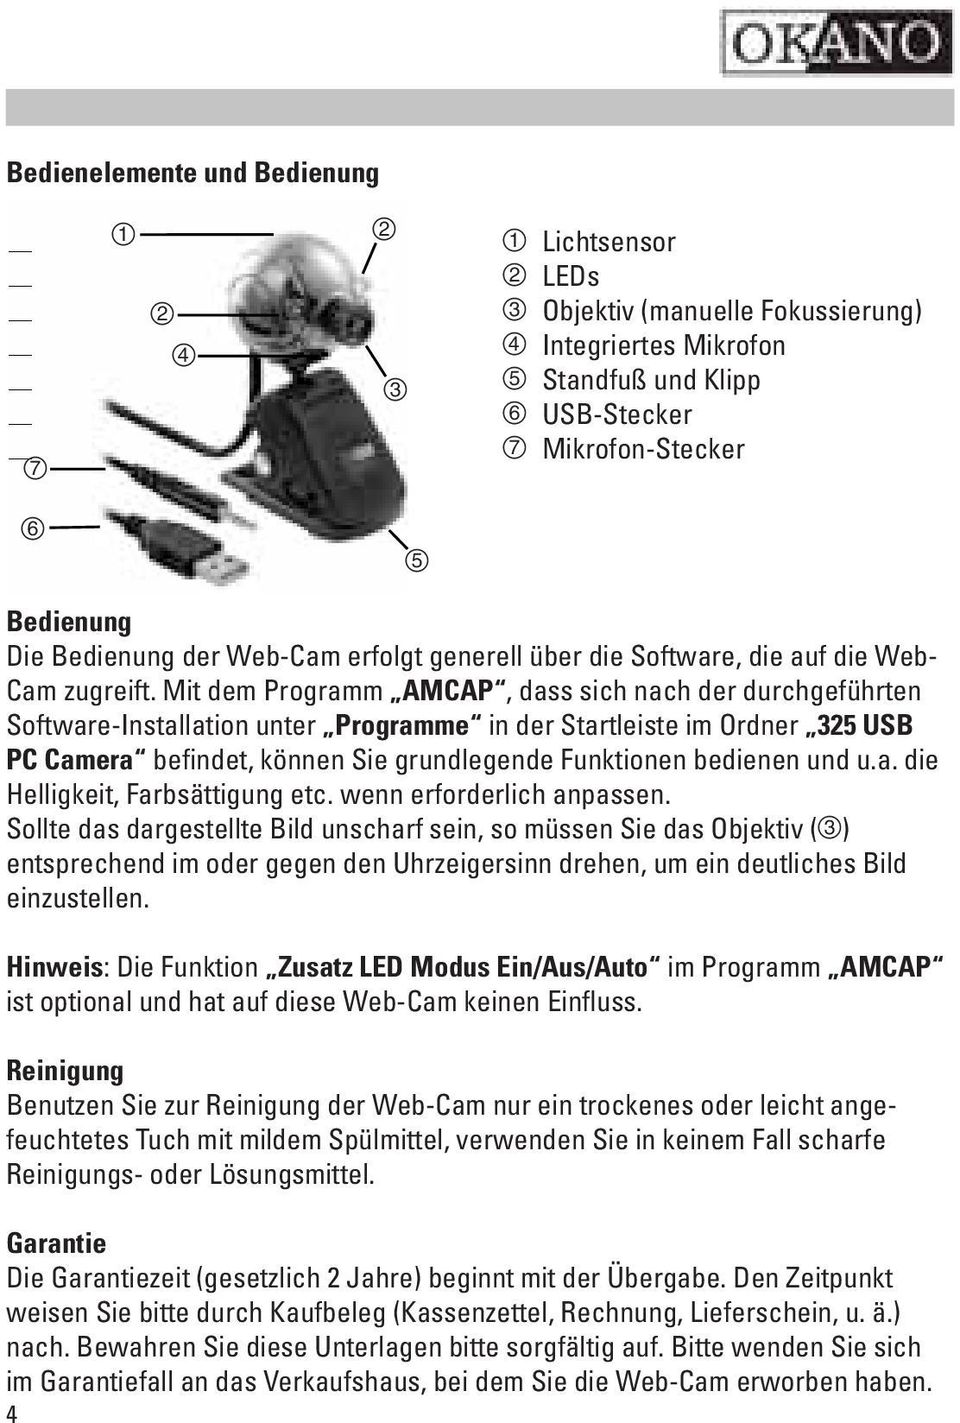 Mit dem Programm AMCAP, dass sich nach der durchgeführten Software-Installation unter Programme in der Startleiste im Ordner 325 USB PC Camera befindet, können Sie grundlegende Funktionen bedienen